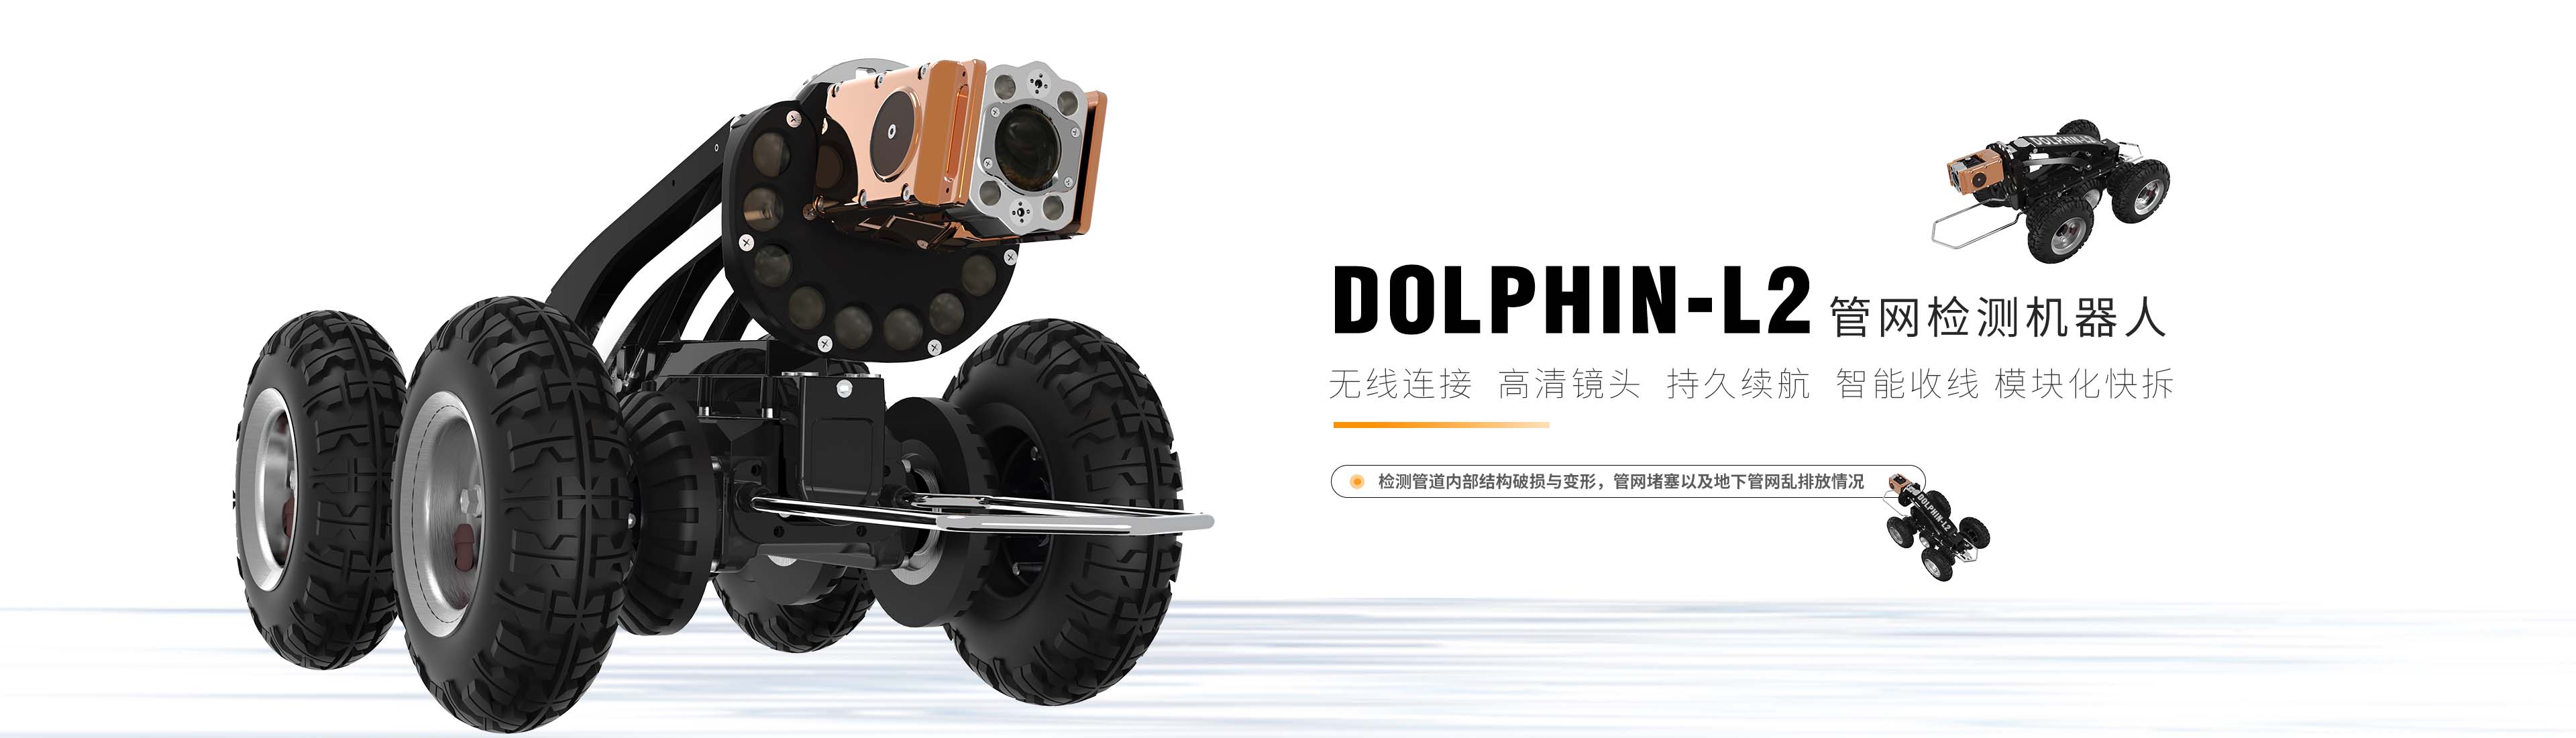 大型管网检测机器人Dolphin-L2